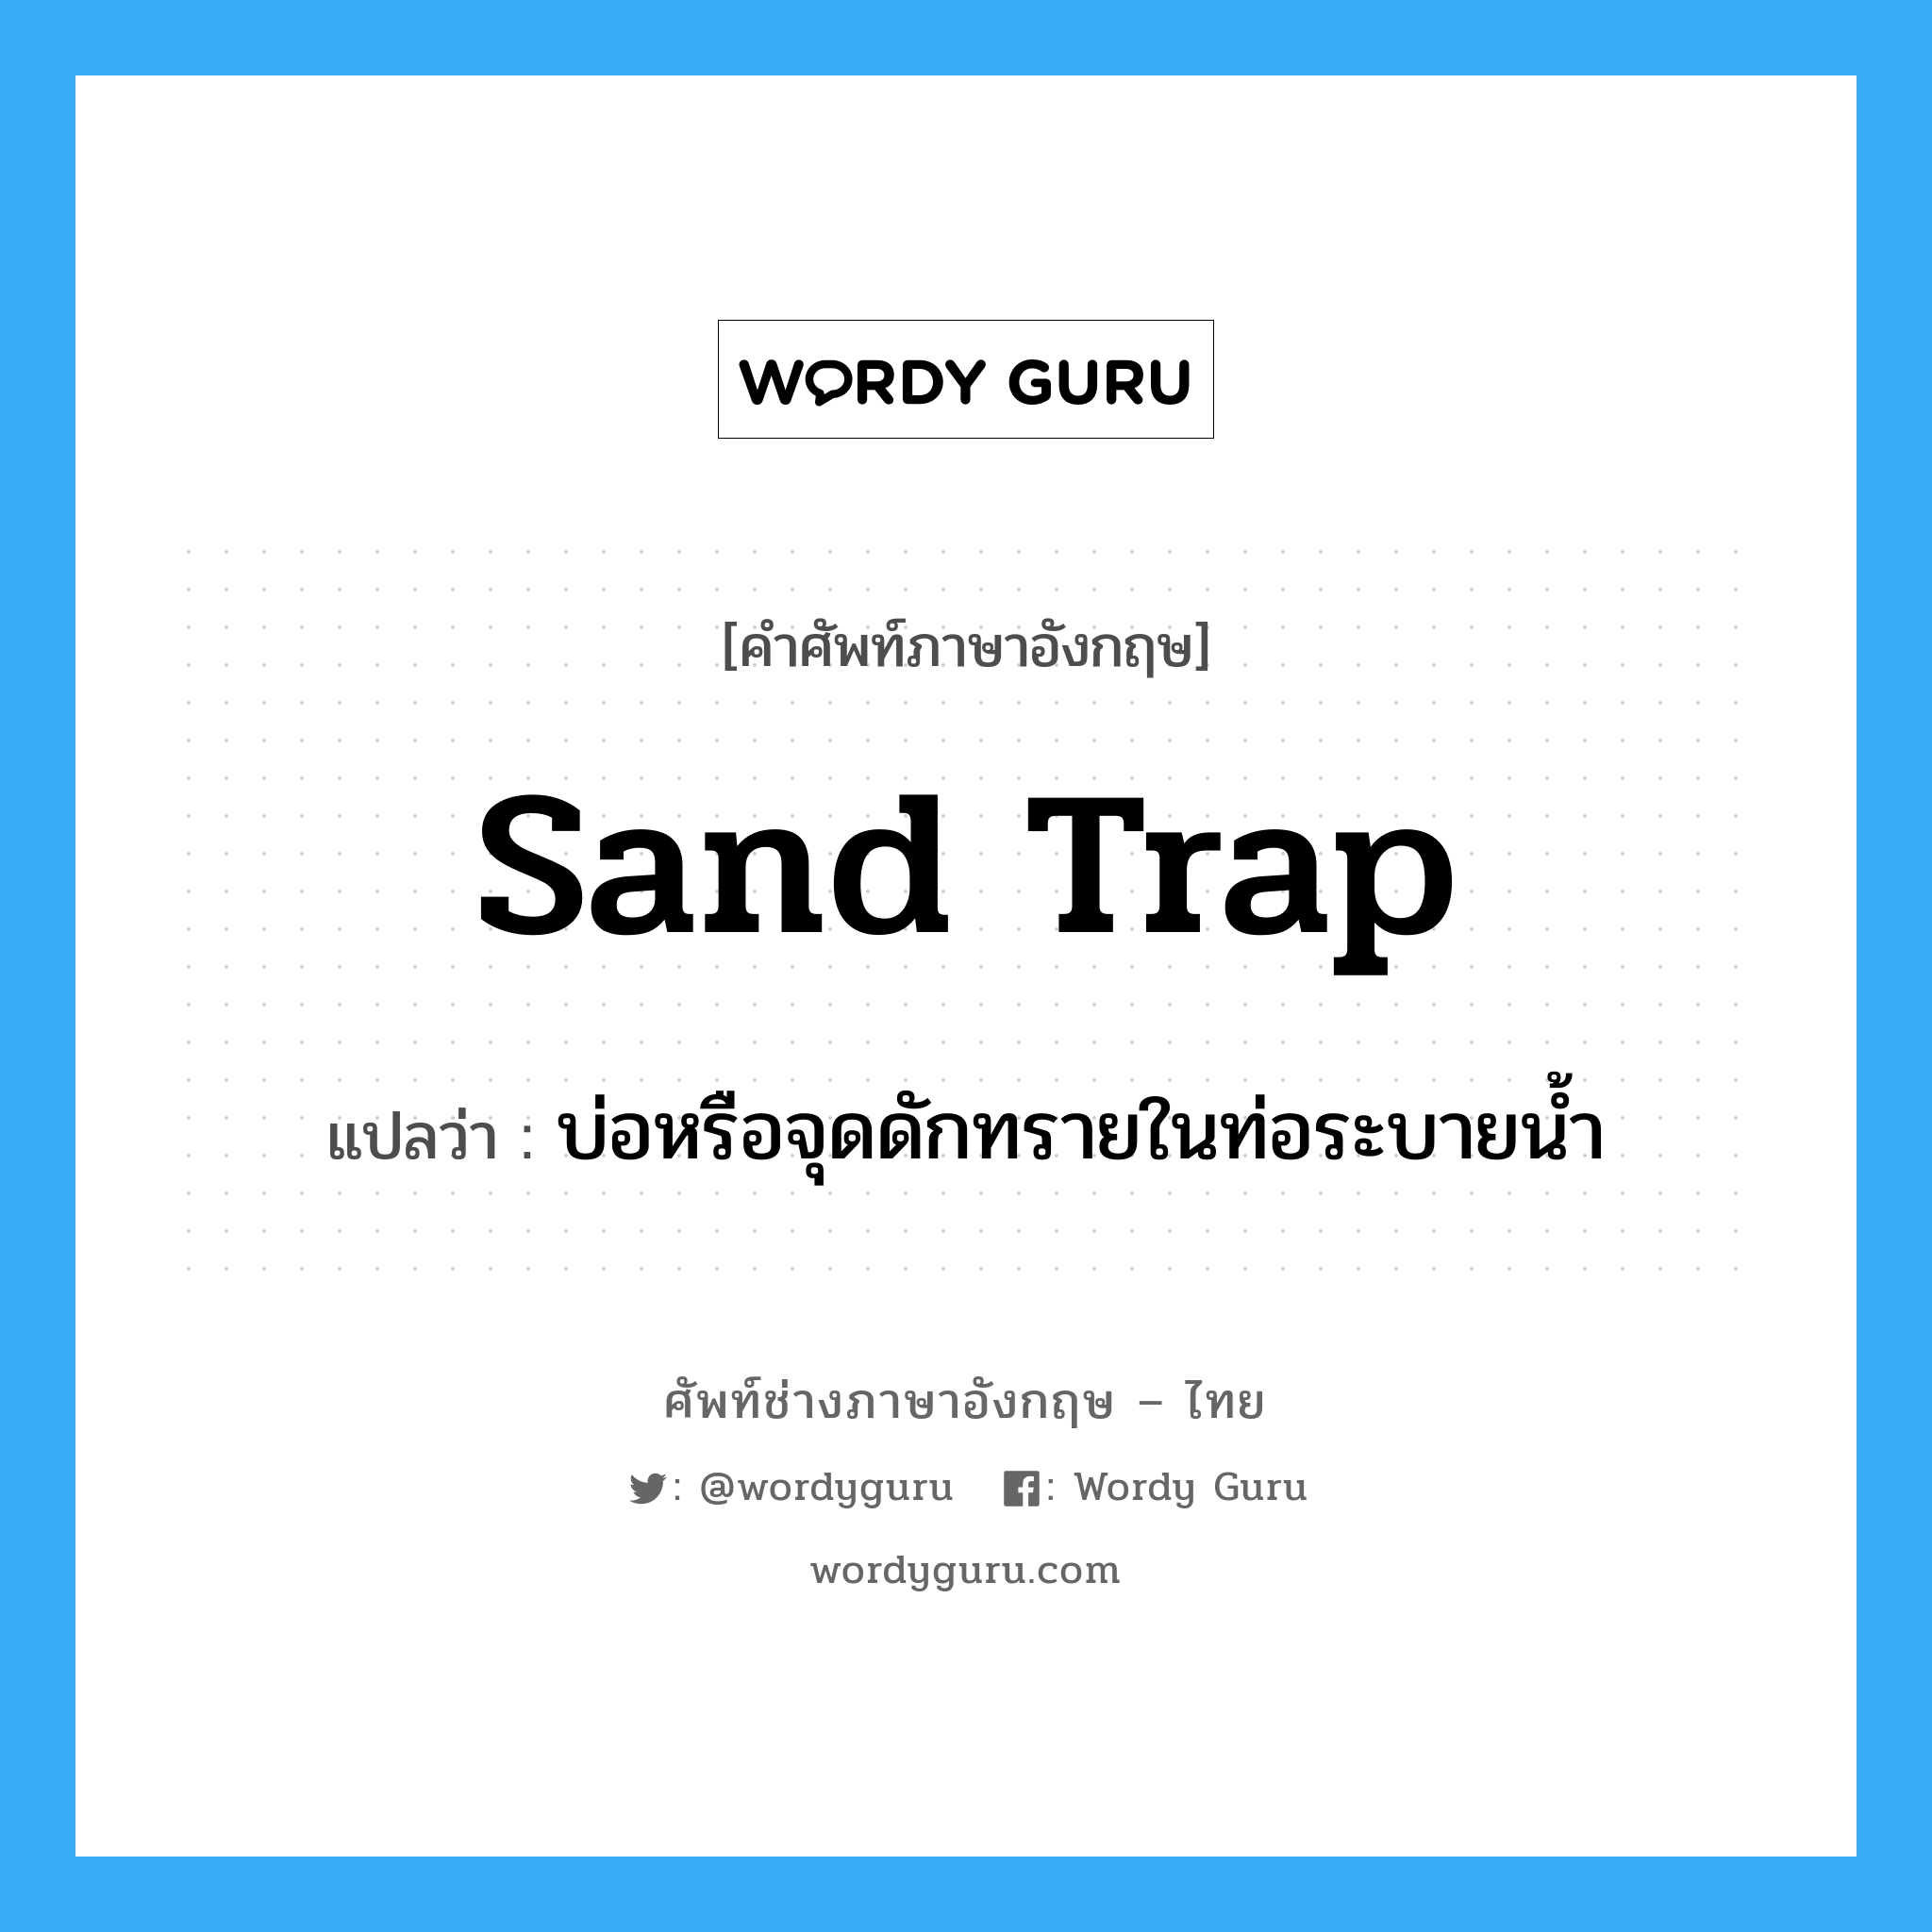 บ่อหรือจุดดักทรายในท่อระบายน้ำ ภาษาอังกฤษ?, คำศัพท์ช่างภาษาอังกฤษ - ไทย บ่อหรือจุดดักทรายในท่อระบายน้ำ คำศัพท์ภาษาอังกฤษ บ่อหรือจุดดักทรายในท่อระบายน้ำ แปลว่า sand trap